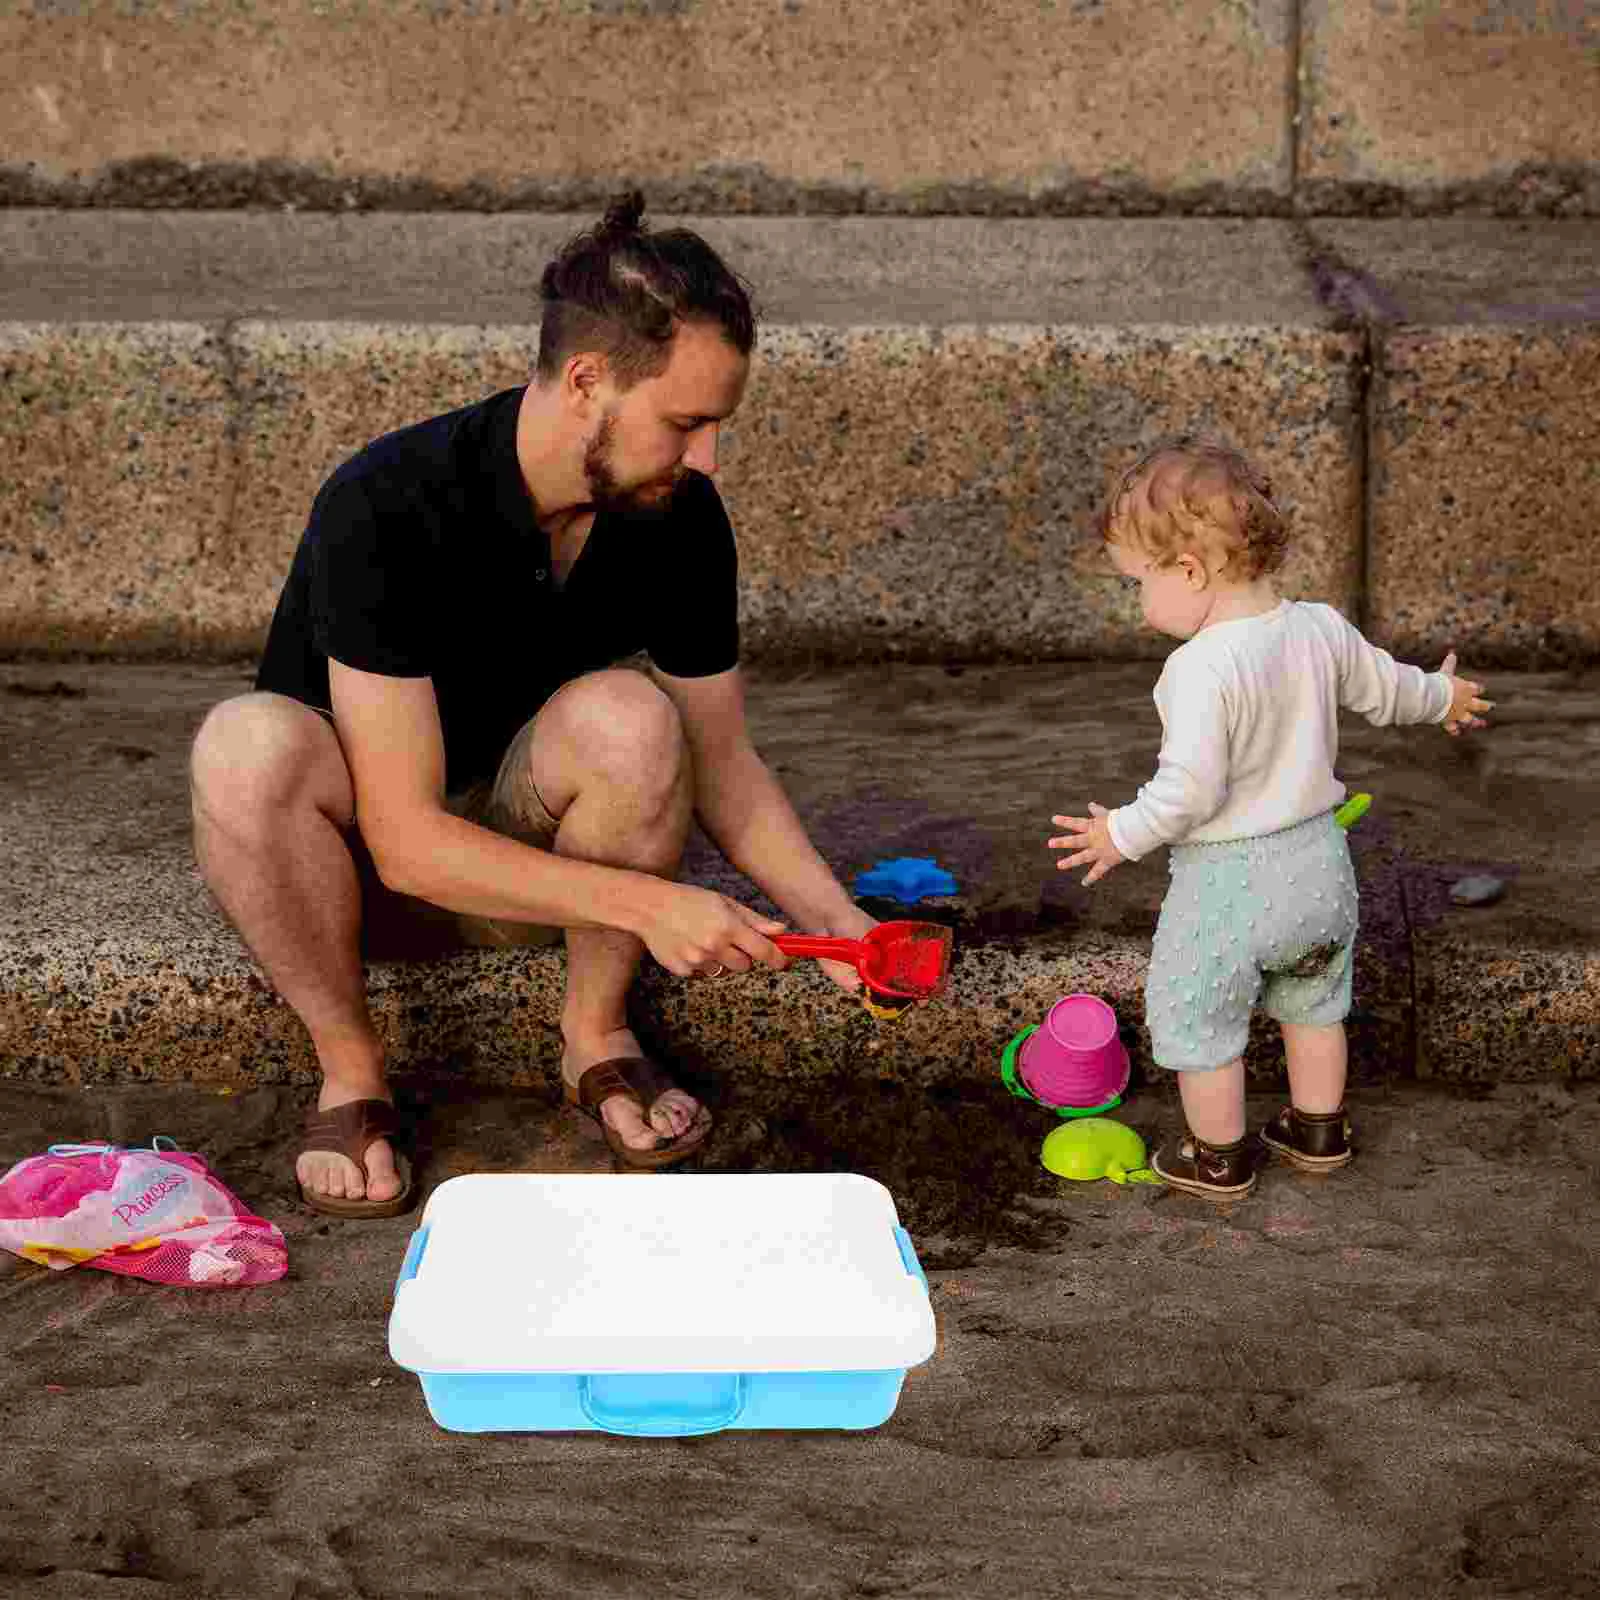 

Песочный стол, коробка для хранения детских игрушек, поднос, портативный песочный ящик, смешные мероприятия с крышкой